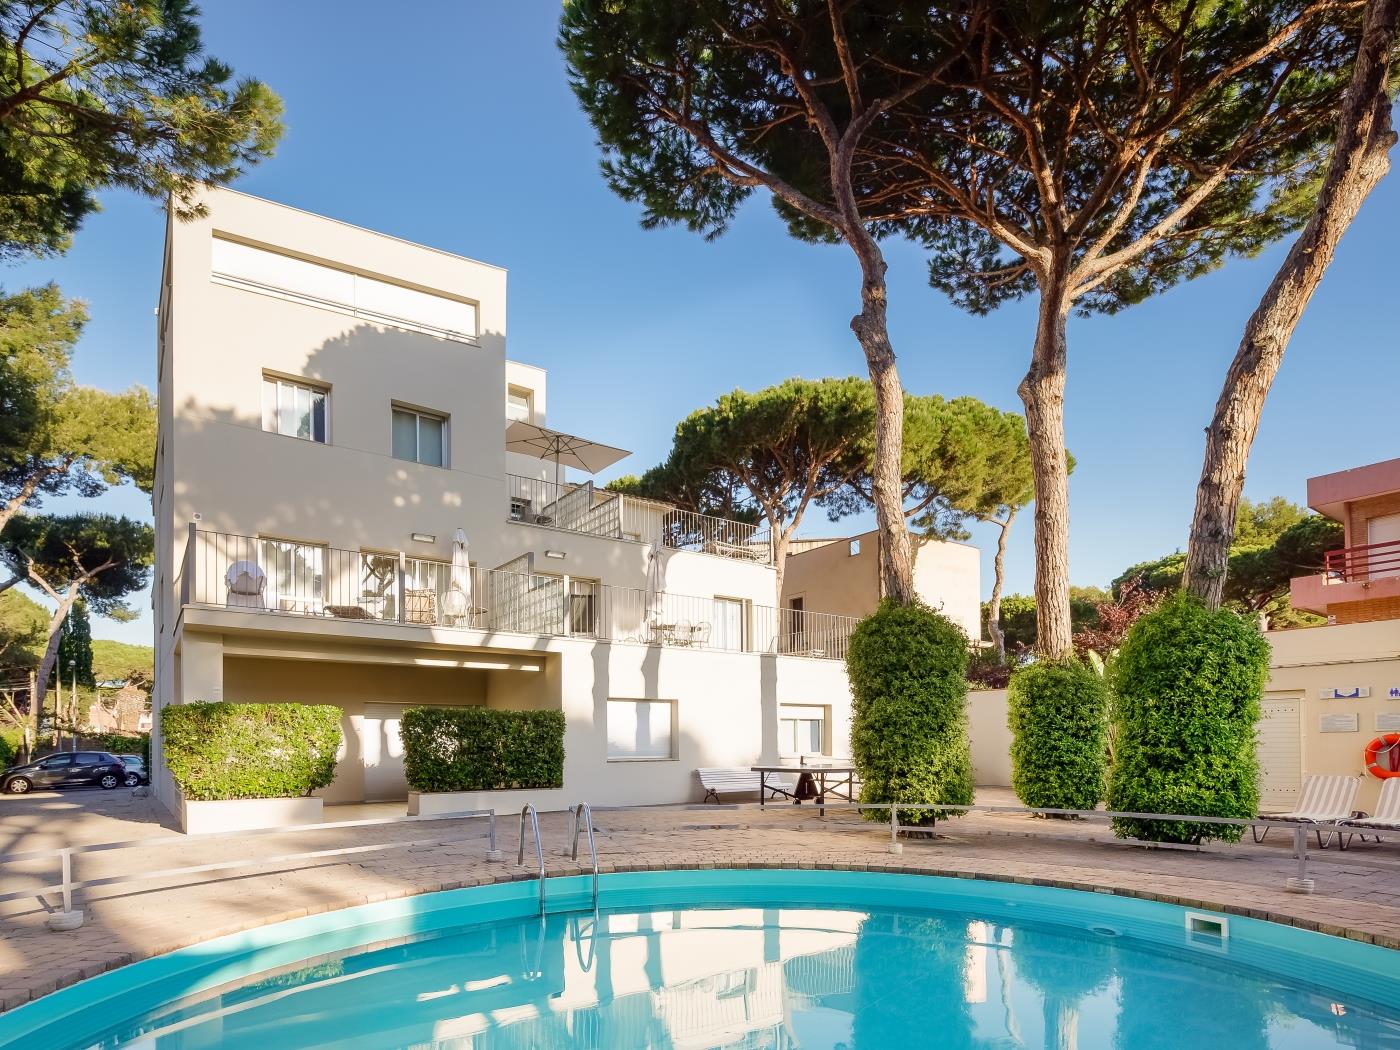 Apartamento de un solo ambiente con piscina sin terraza privada con parking y wifi en Castelldefels